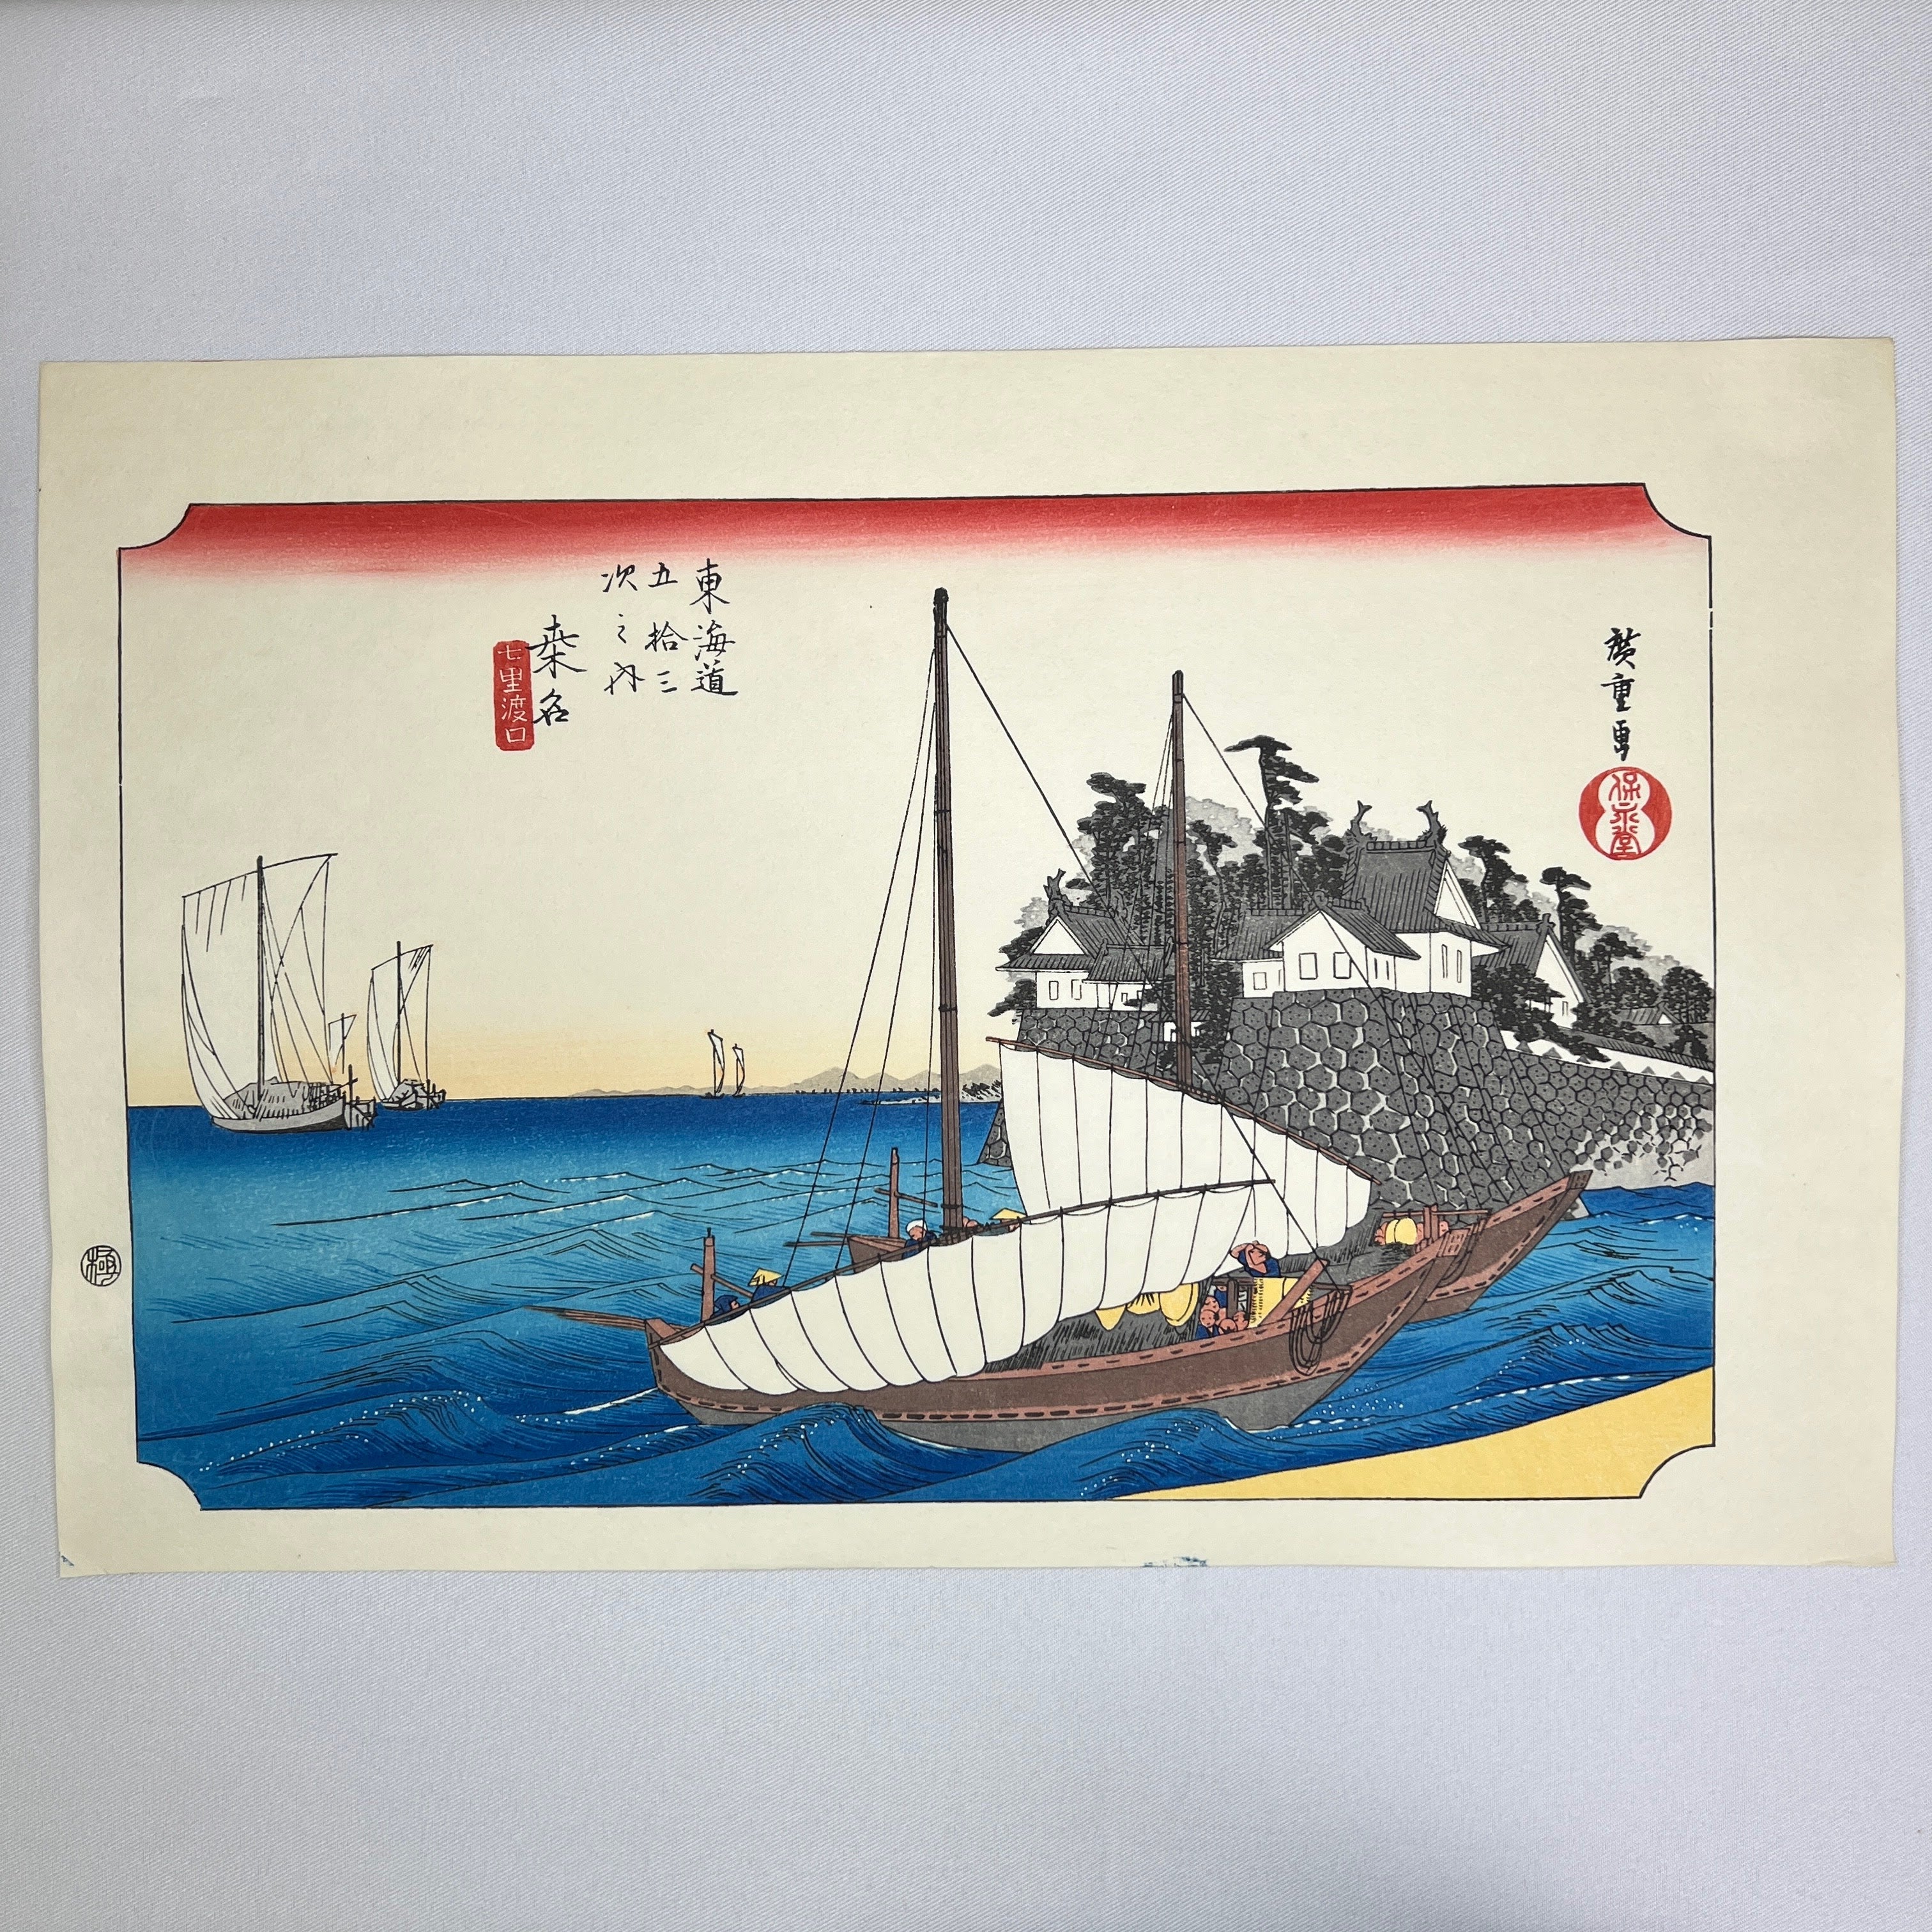 Kuwana(Printed by Matsuzaki)